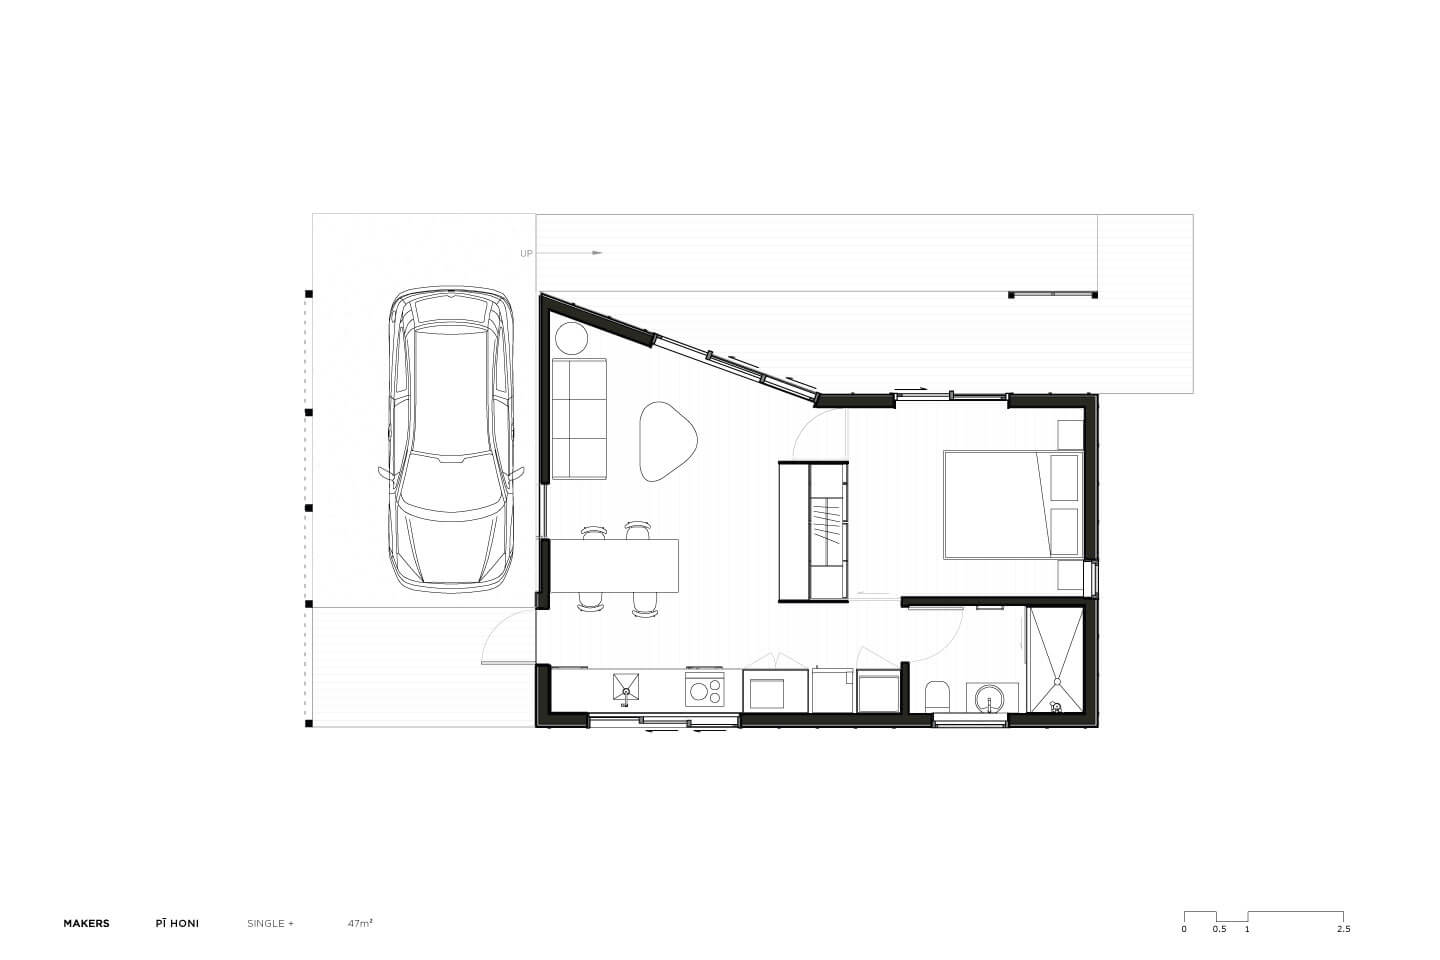 SNUG_Pi_Honi_Single-Plus_Plan_Makers-of-Architecture